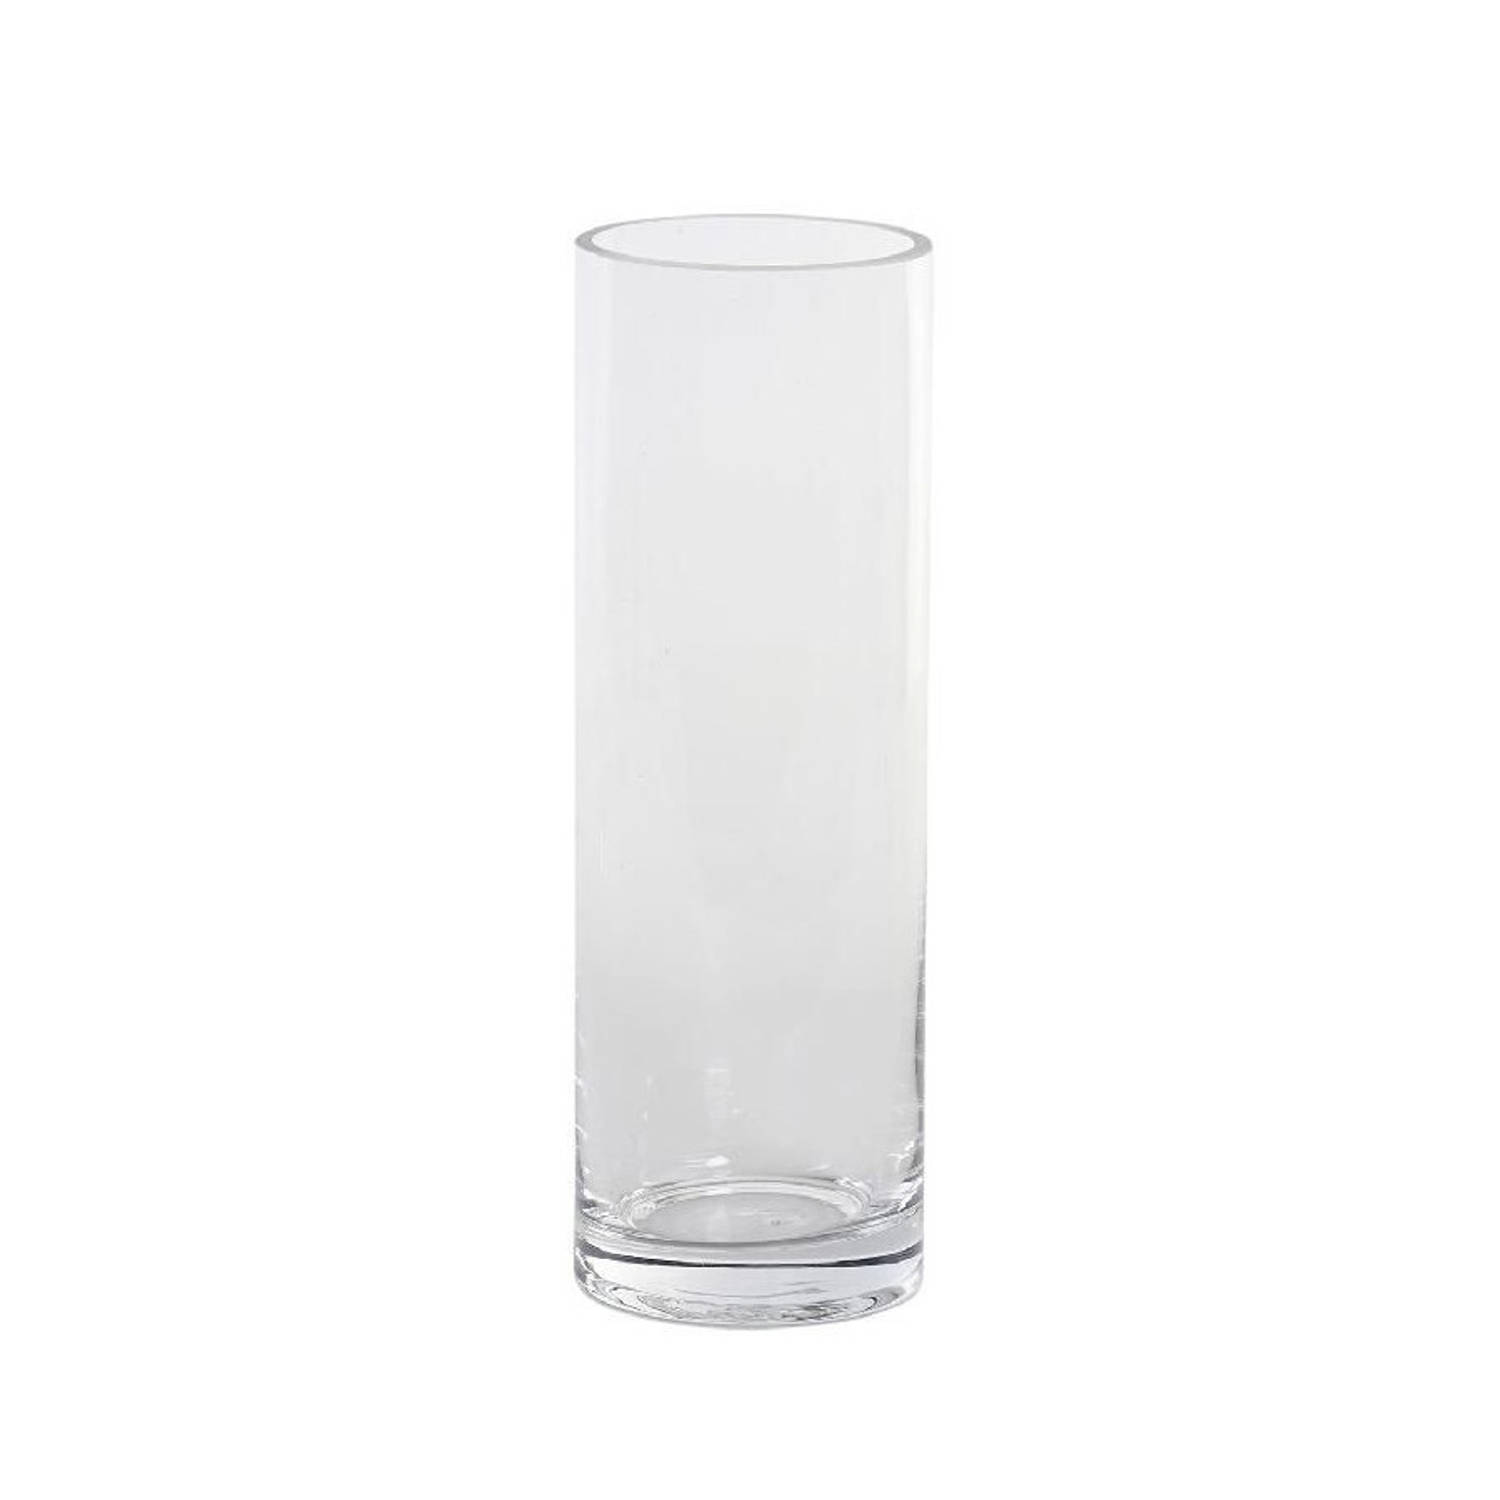 Vergissing spoelen winnen Cilindervaas/bloemenvaas van glas 8 x 24 cm - Vazen | Blokker